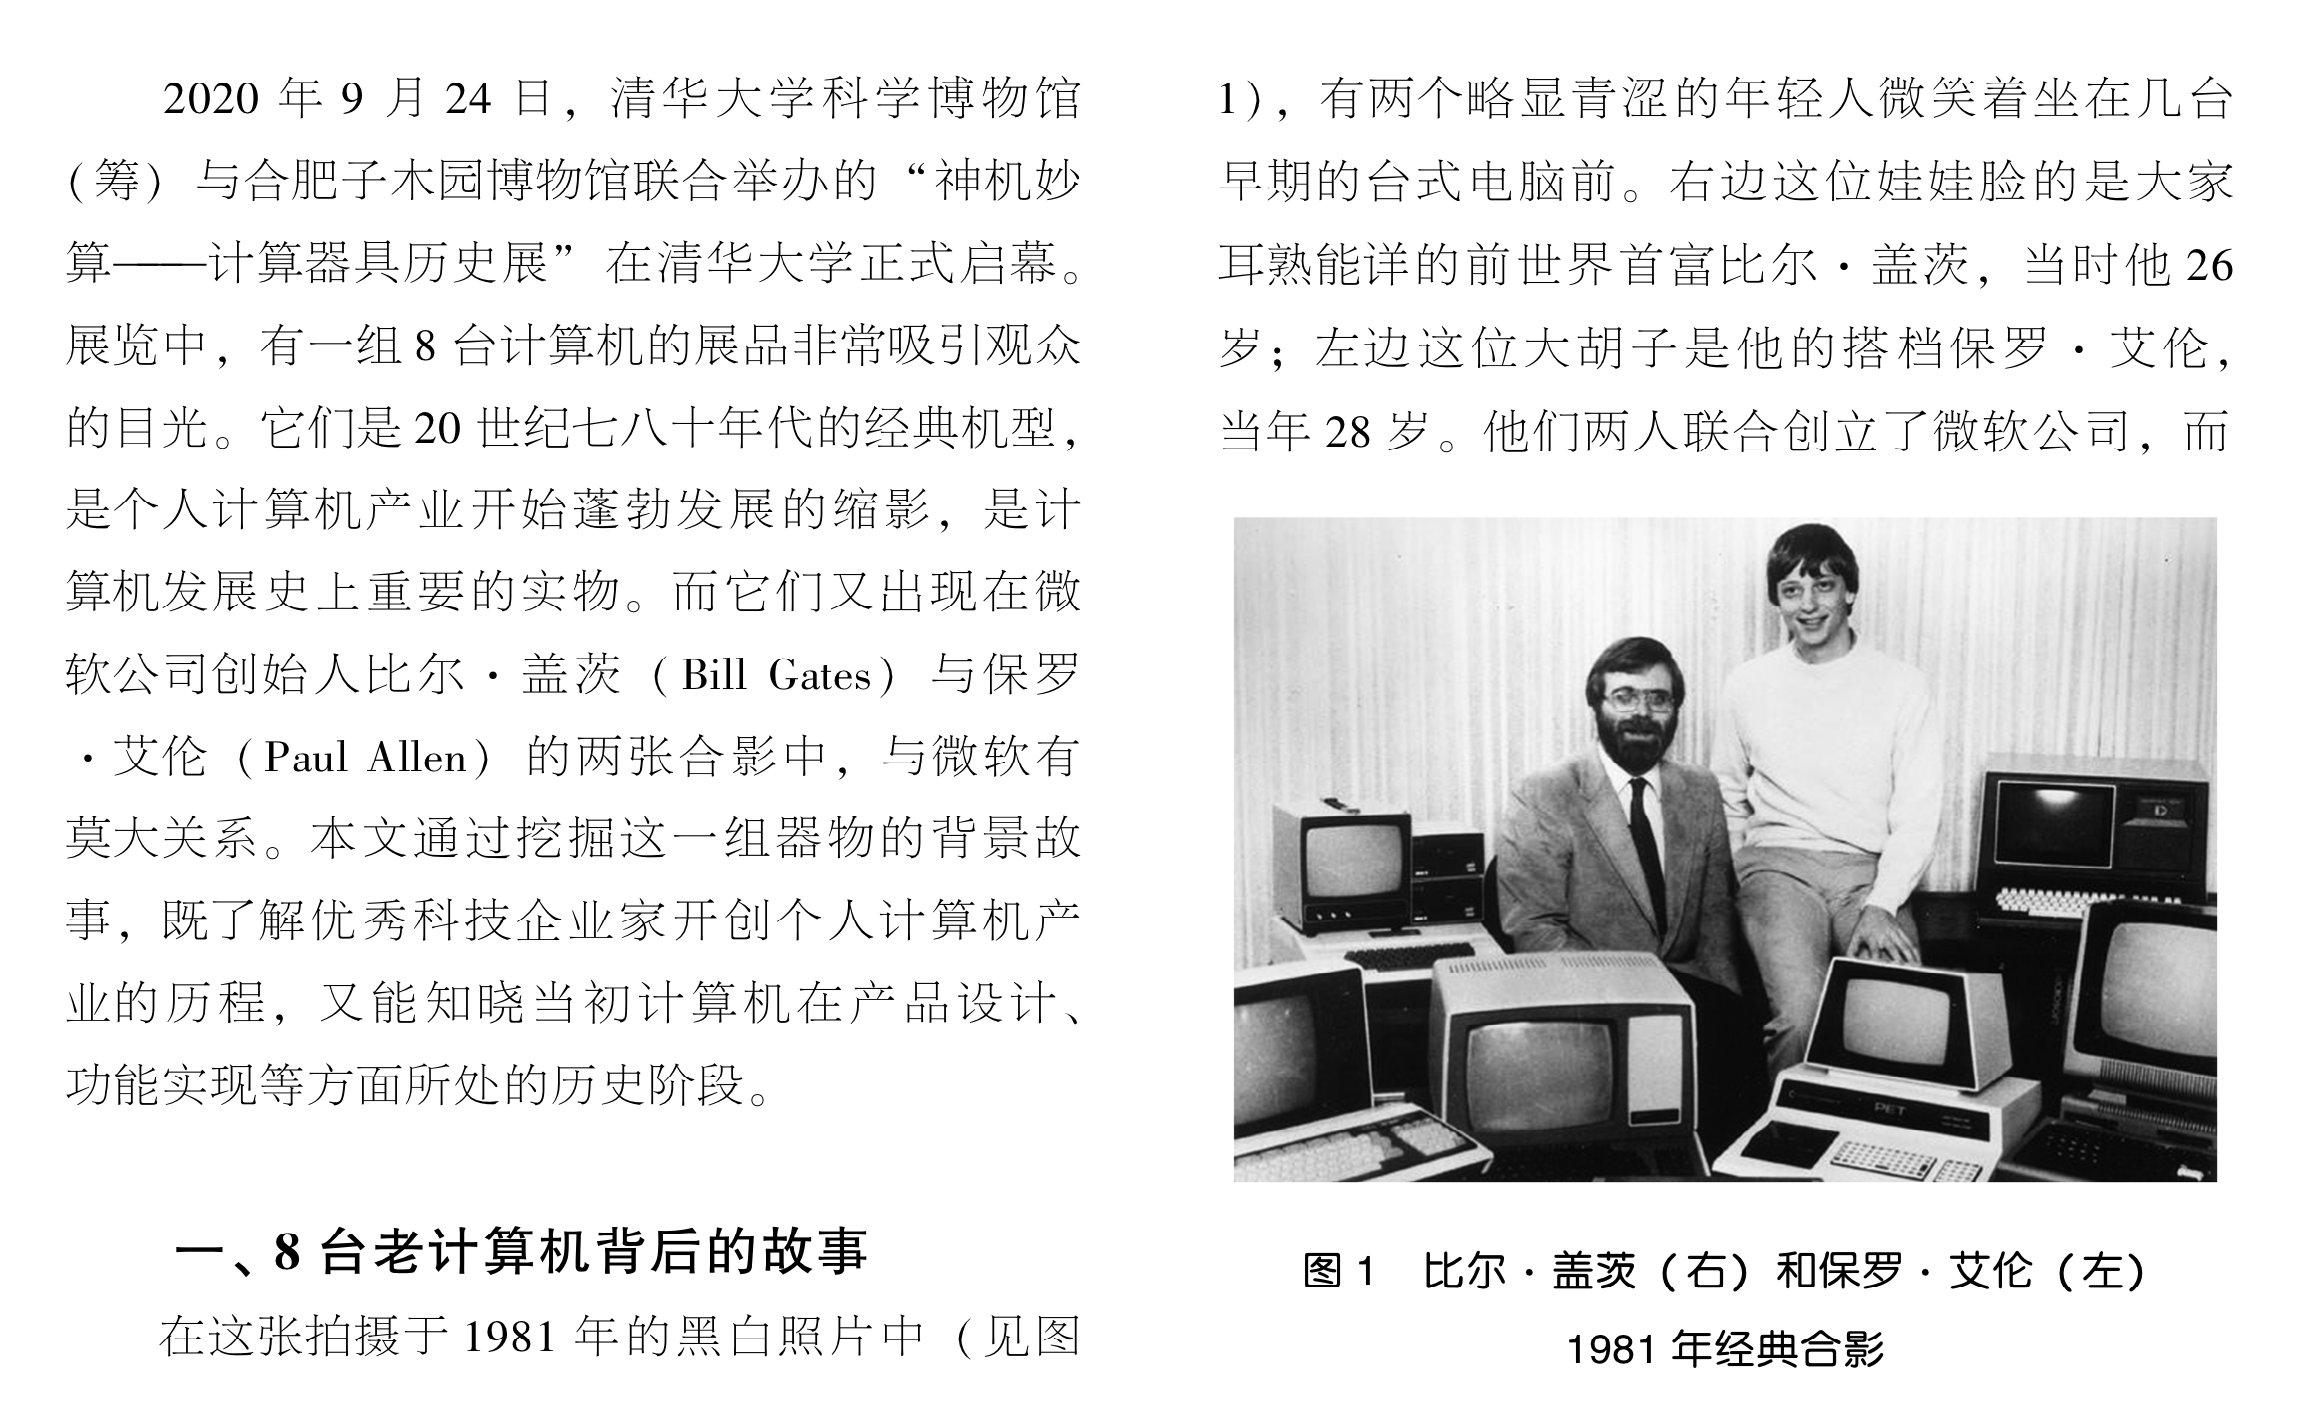 司宏伟博士后与王泽宇共同发表《微机传奇——8台老计算机的前世今生》